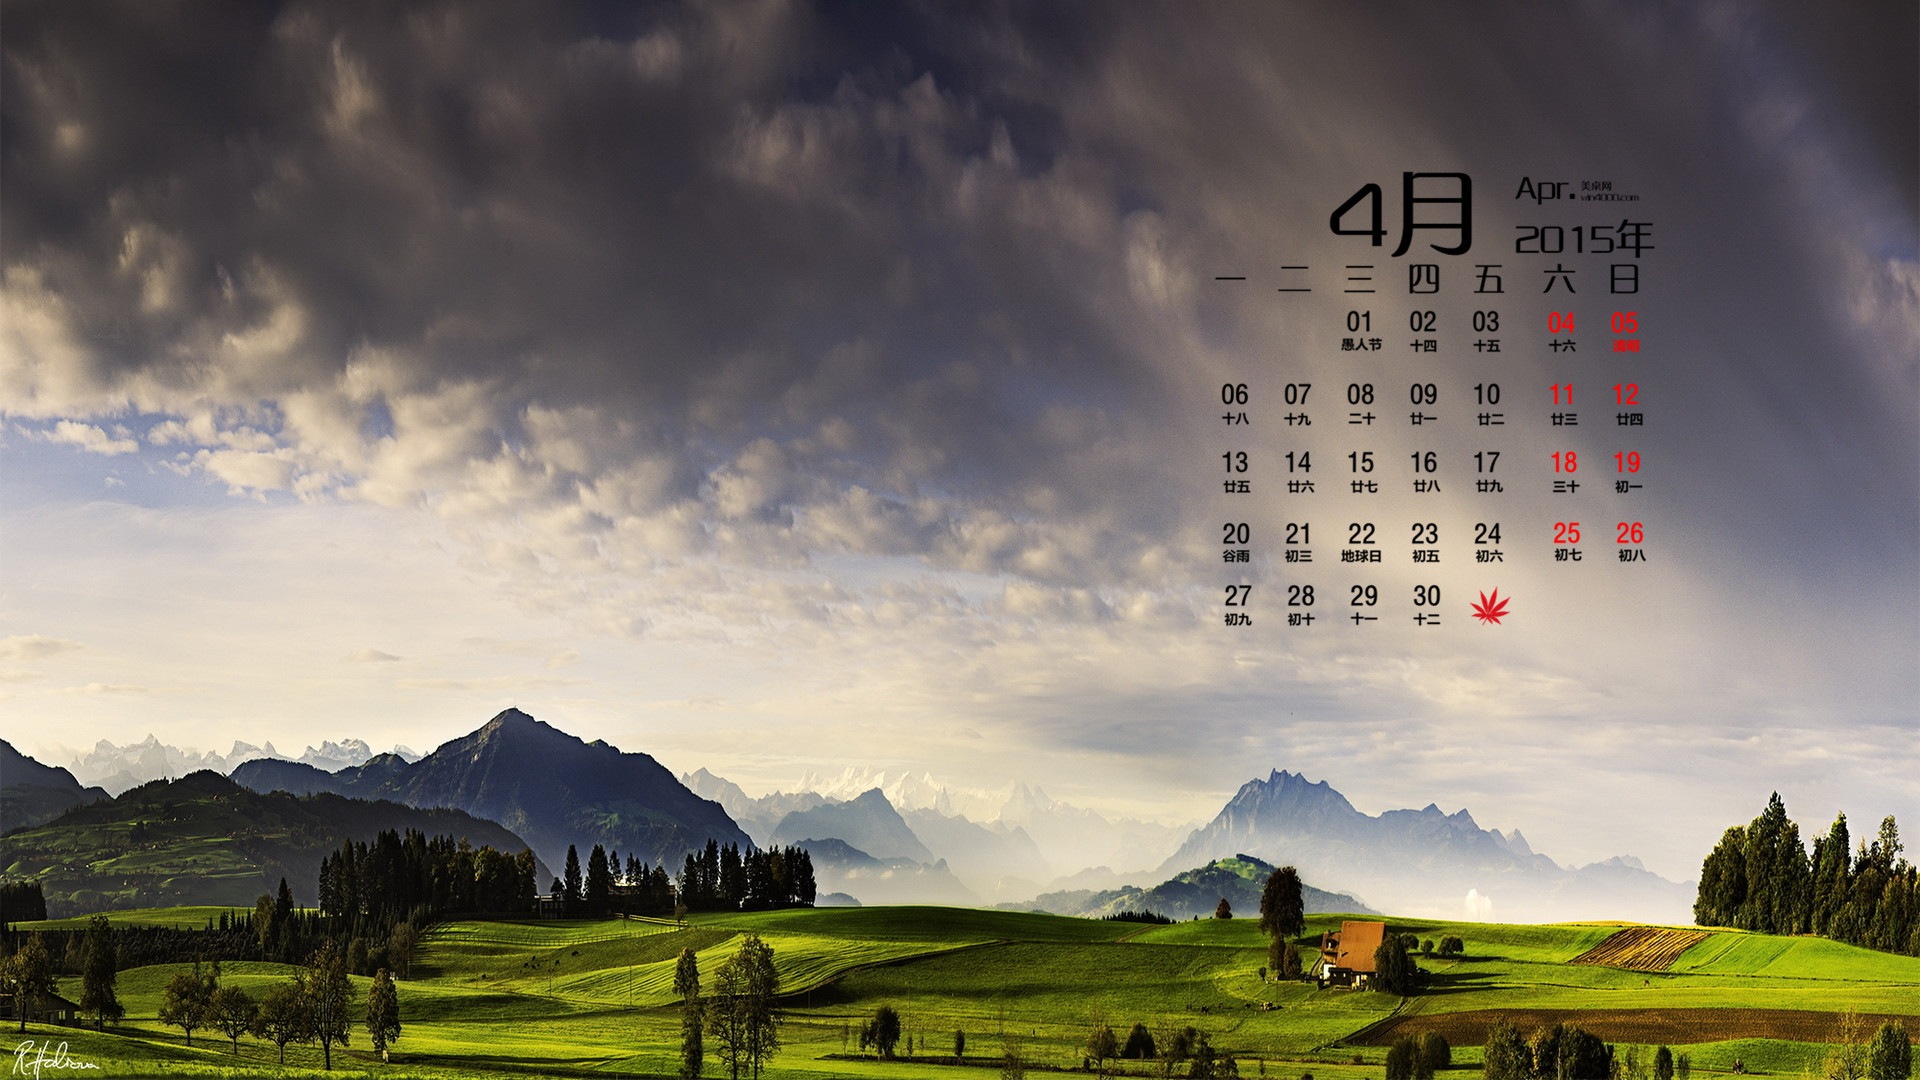 Dubna 2015 kalendář tapety (2) #5 - 1920x1080